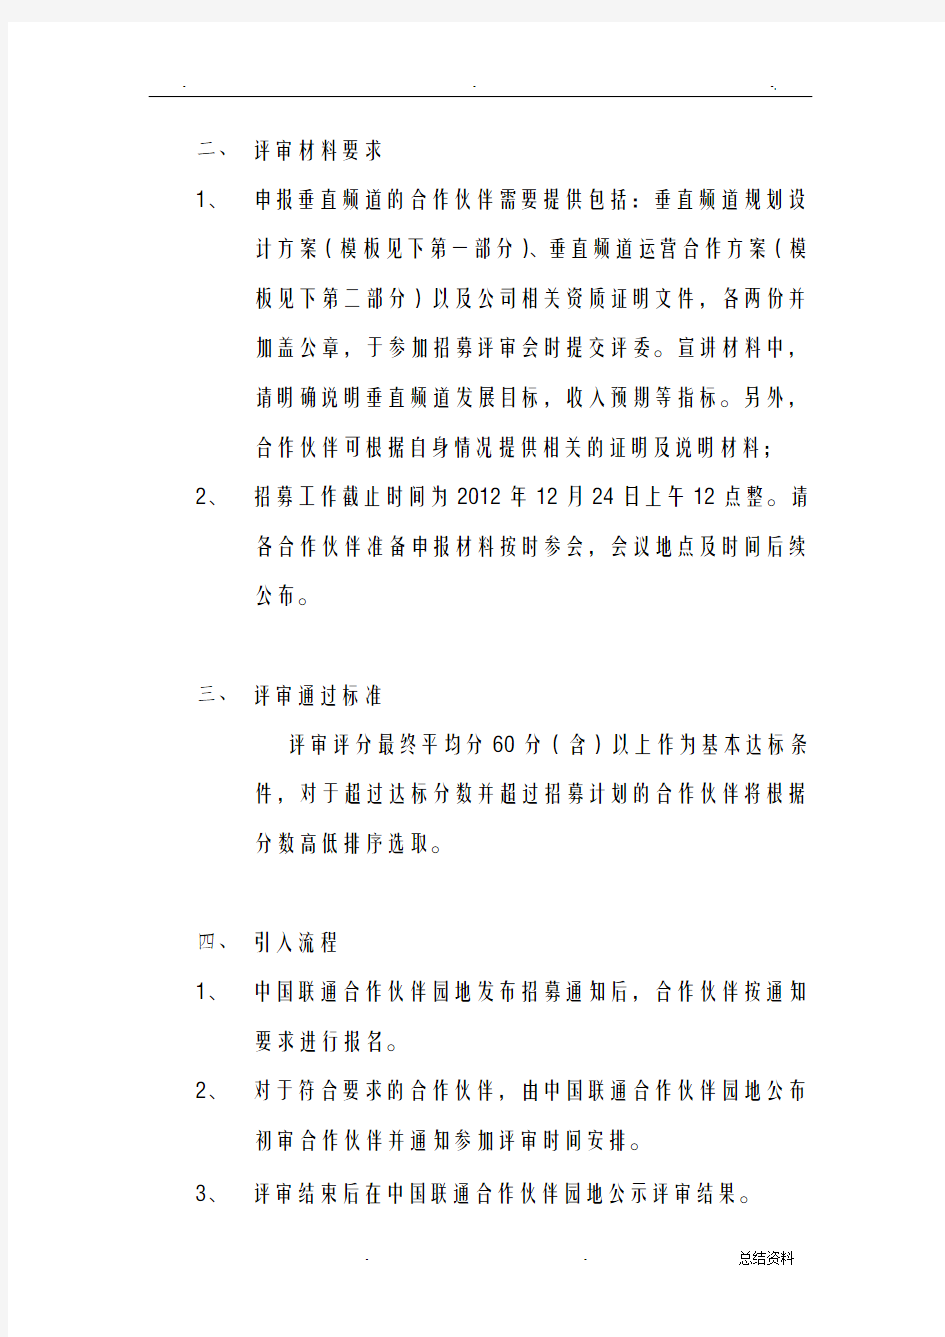 中国联通智能平台手机电视业务垂直频道运营支撑方招募函